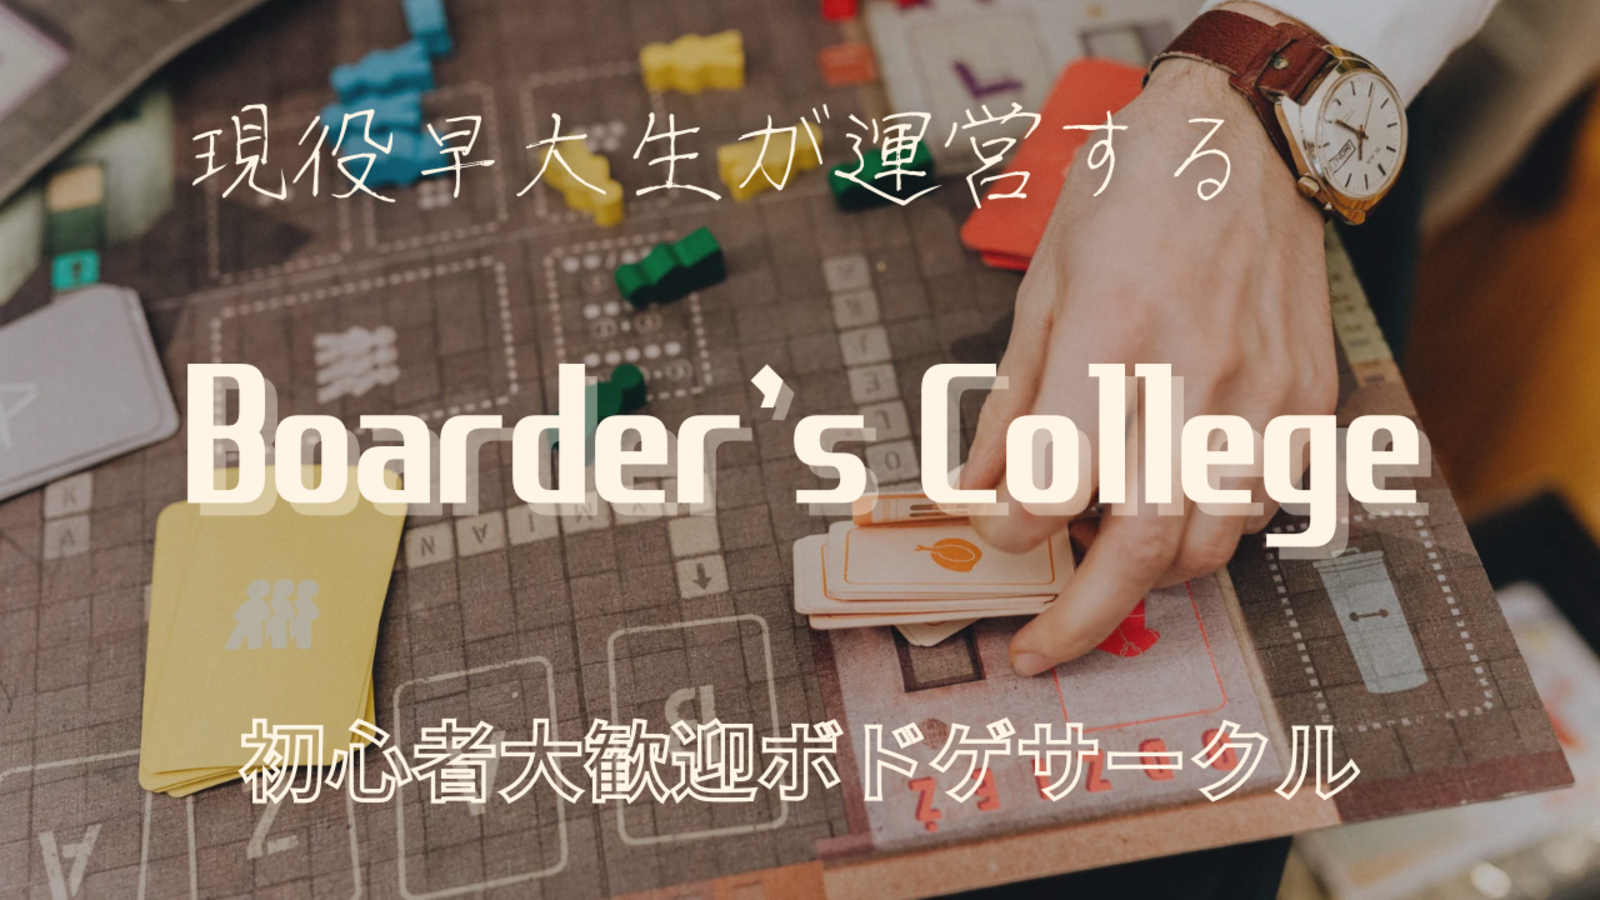 " Boarder's college " 現役早大生が運営する初心者向けレク・ボードゲームサークル